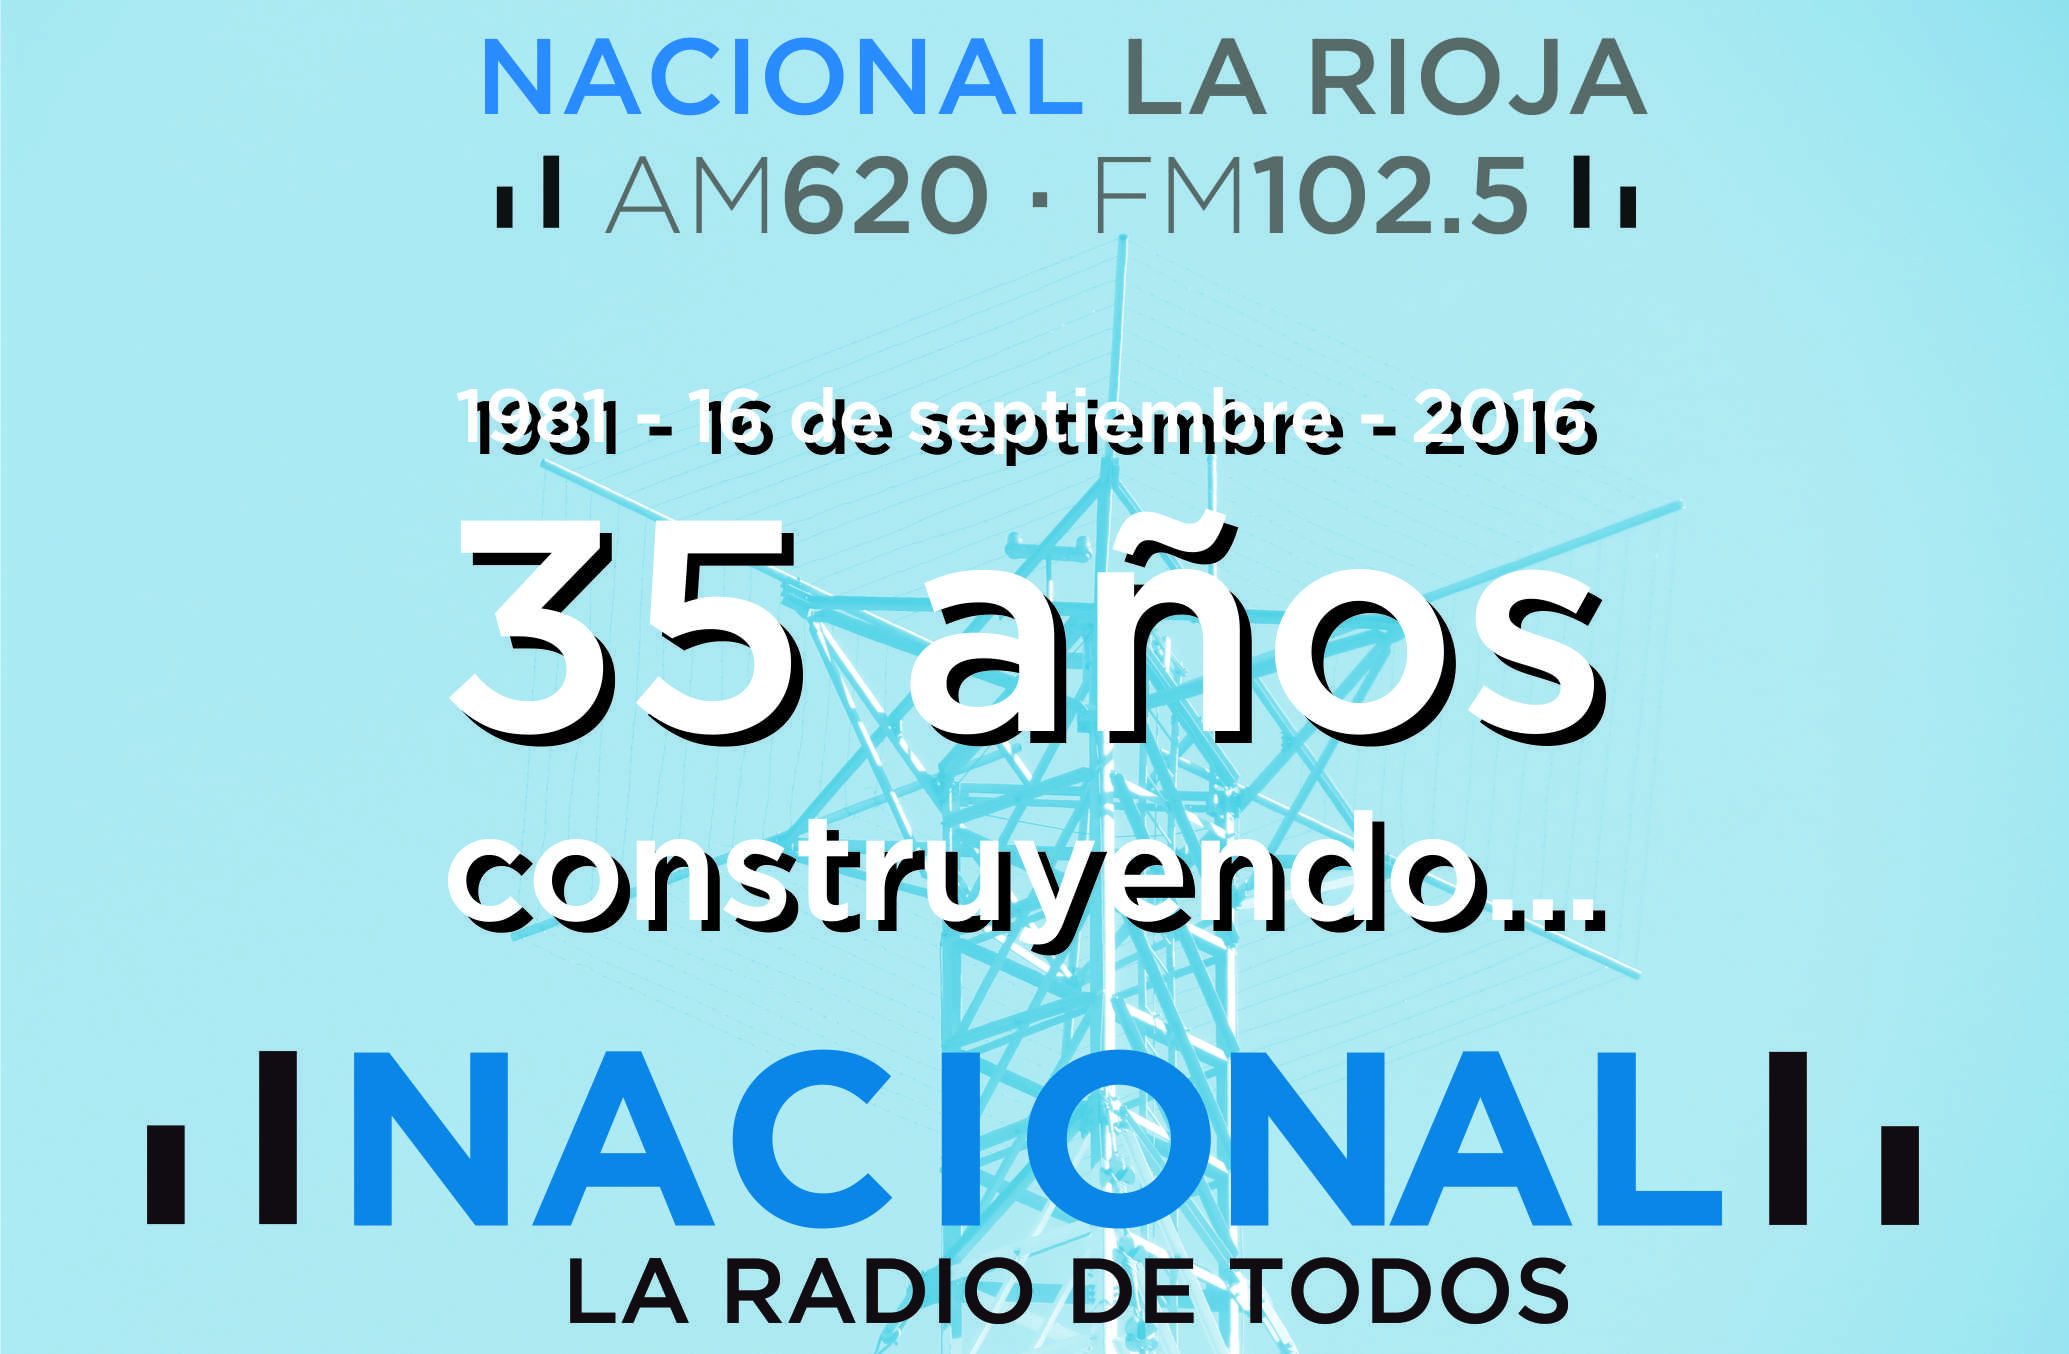 Radio Nacional La Rioja festeja su 35 aniversario – Radio Nacional